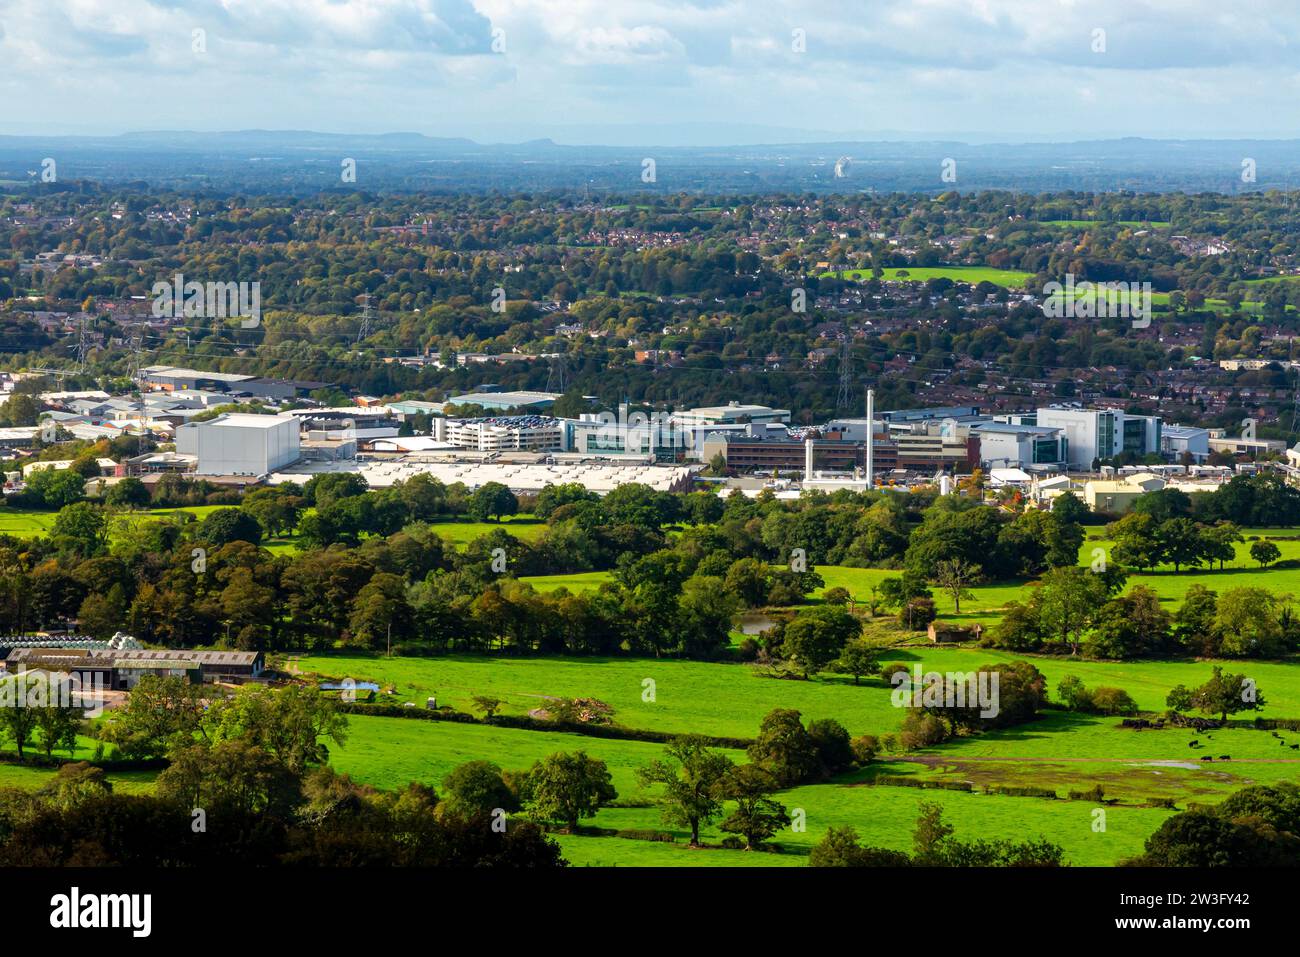 Vista dalla fabbrica Astra Zeneca di Macclesfield, Cheshire, Inghilterra, Regno Unito, con la Cheshire Plain e la Jodrell Bank visibili in lontananza. Foto Stock